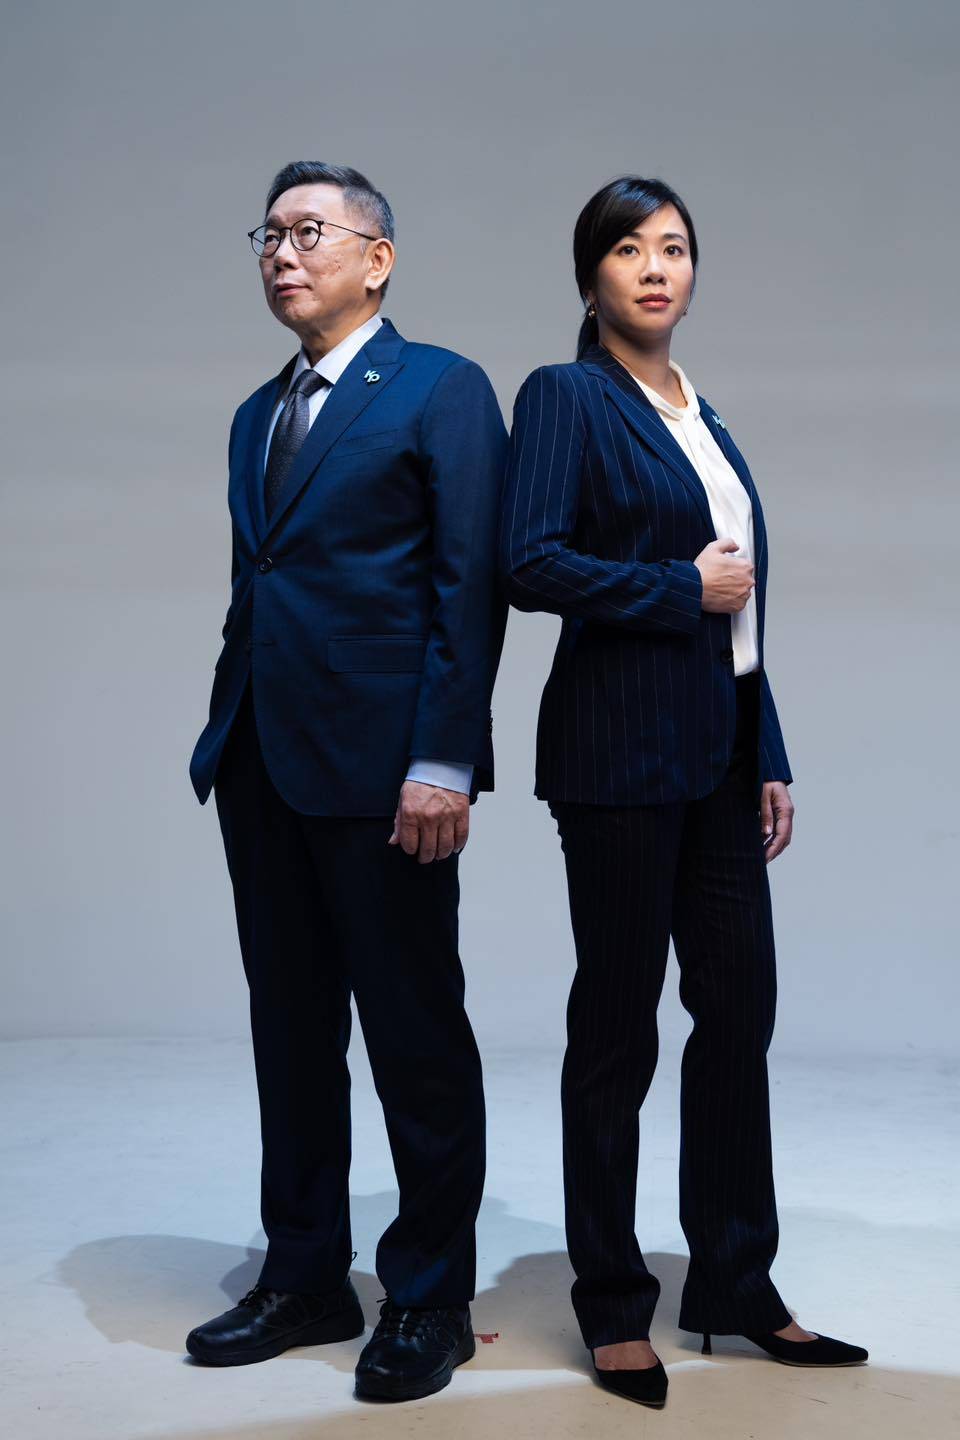 民众党的总统参选人搭档吴欣盈，在性别上有互补作用。(图源：instagram)